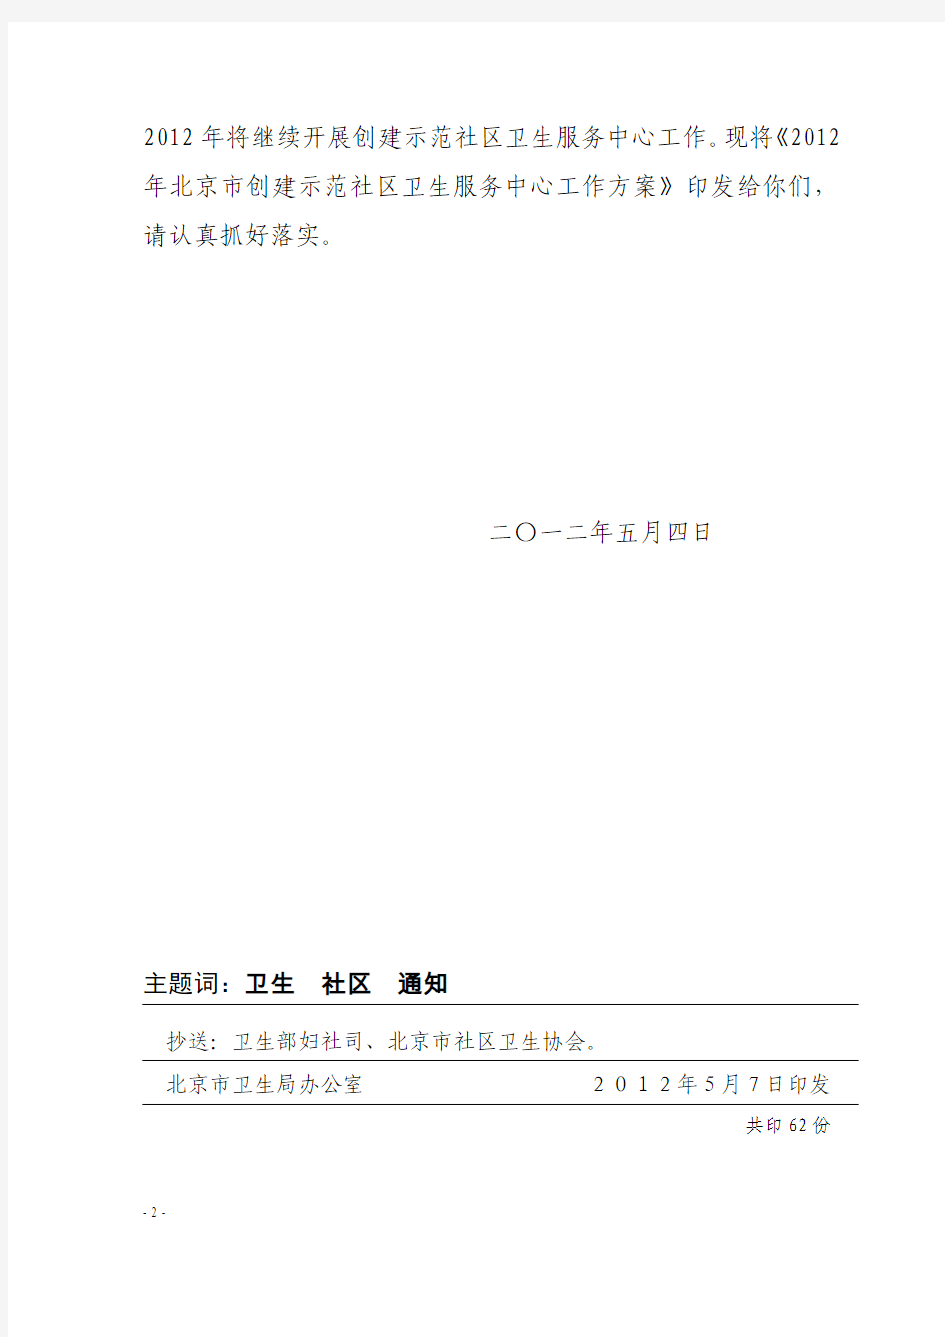 2012年北京市创建示范社区卫生服务中心工作方案(京卫基层字〔2012〕9号)